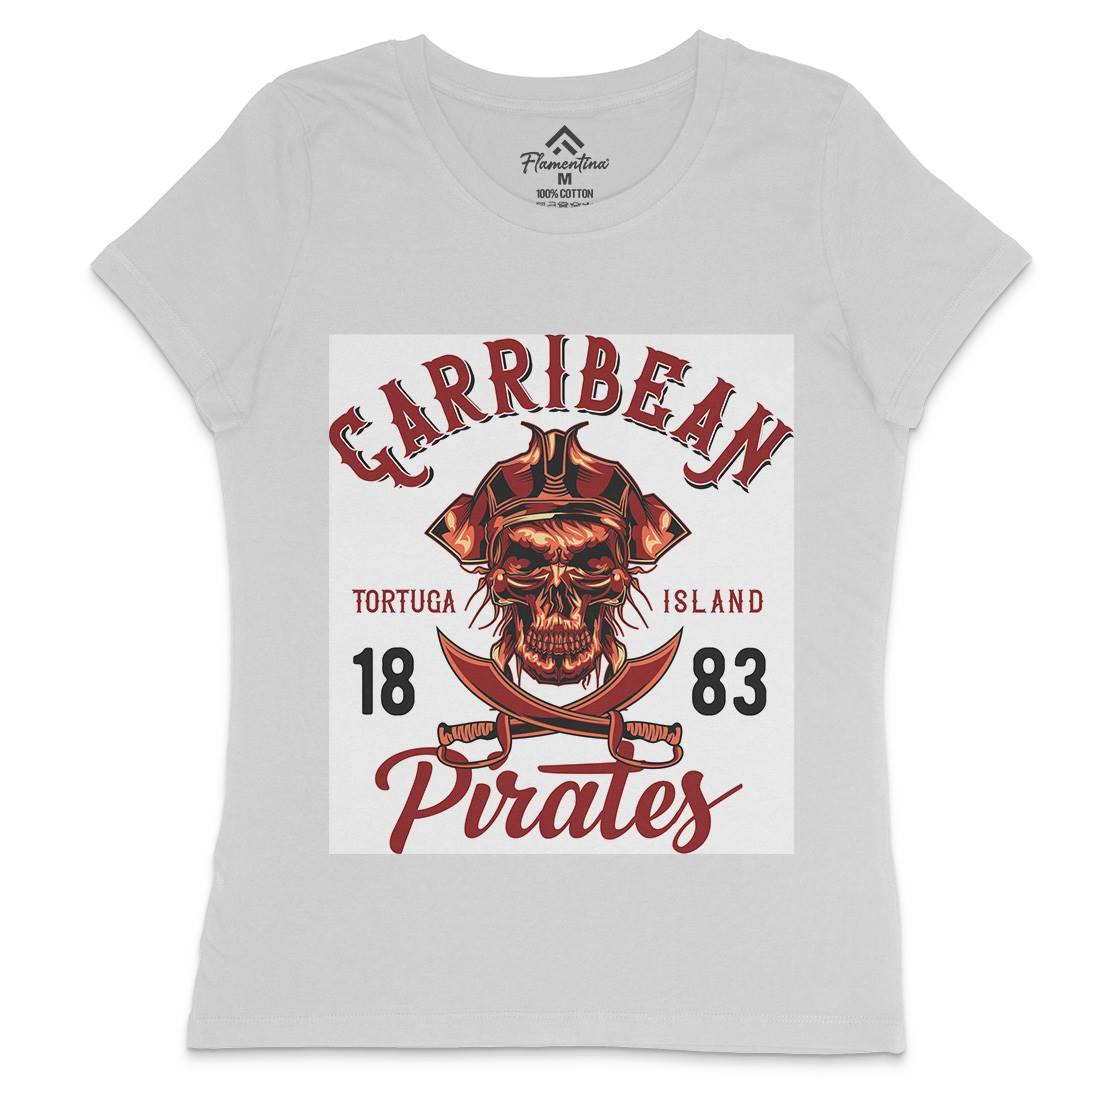 Pirate Womens Crew Neck T-Shirt Navy B160